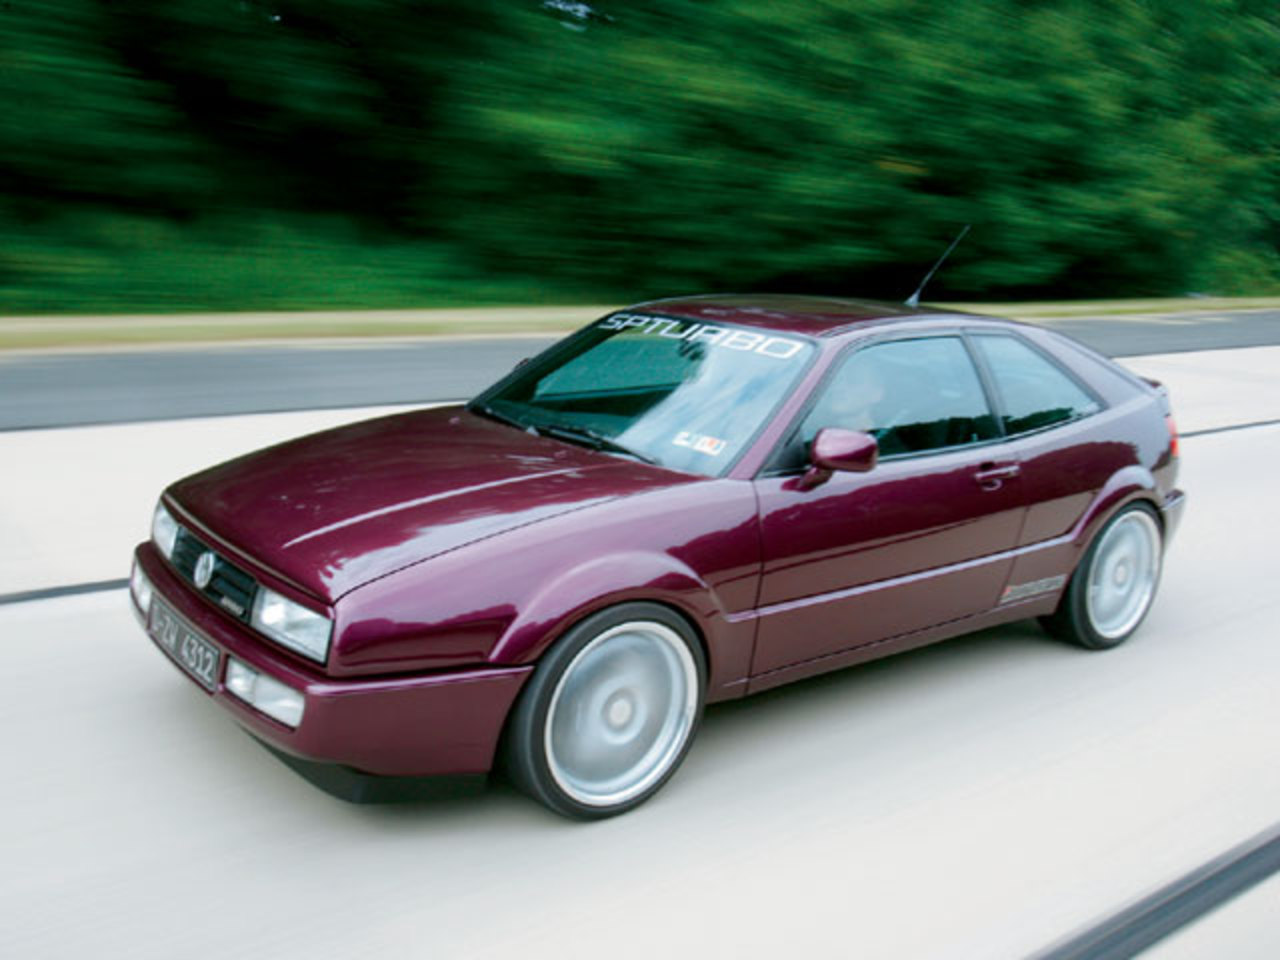 1994 Volkswagen Corrado Vr6 - Brian Berwind's Turbo 'Rado